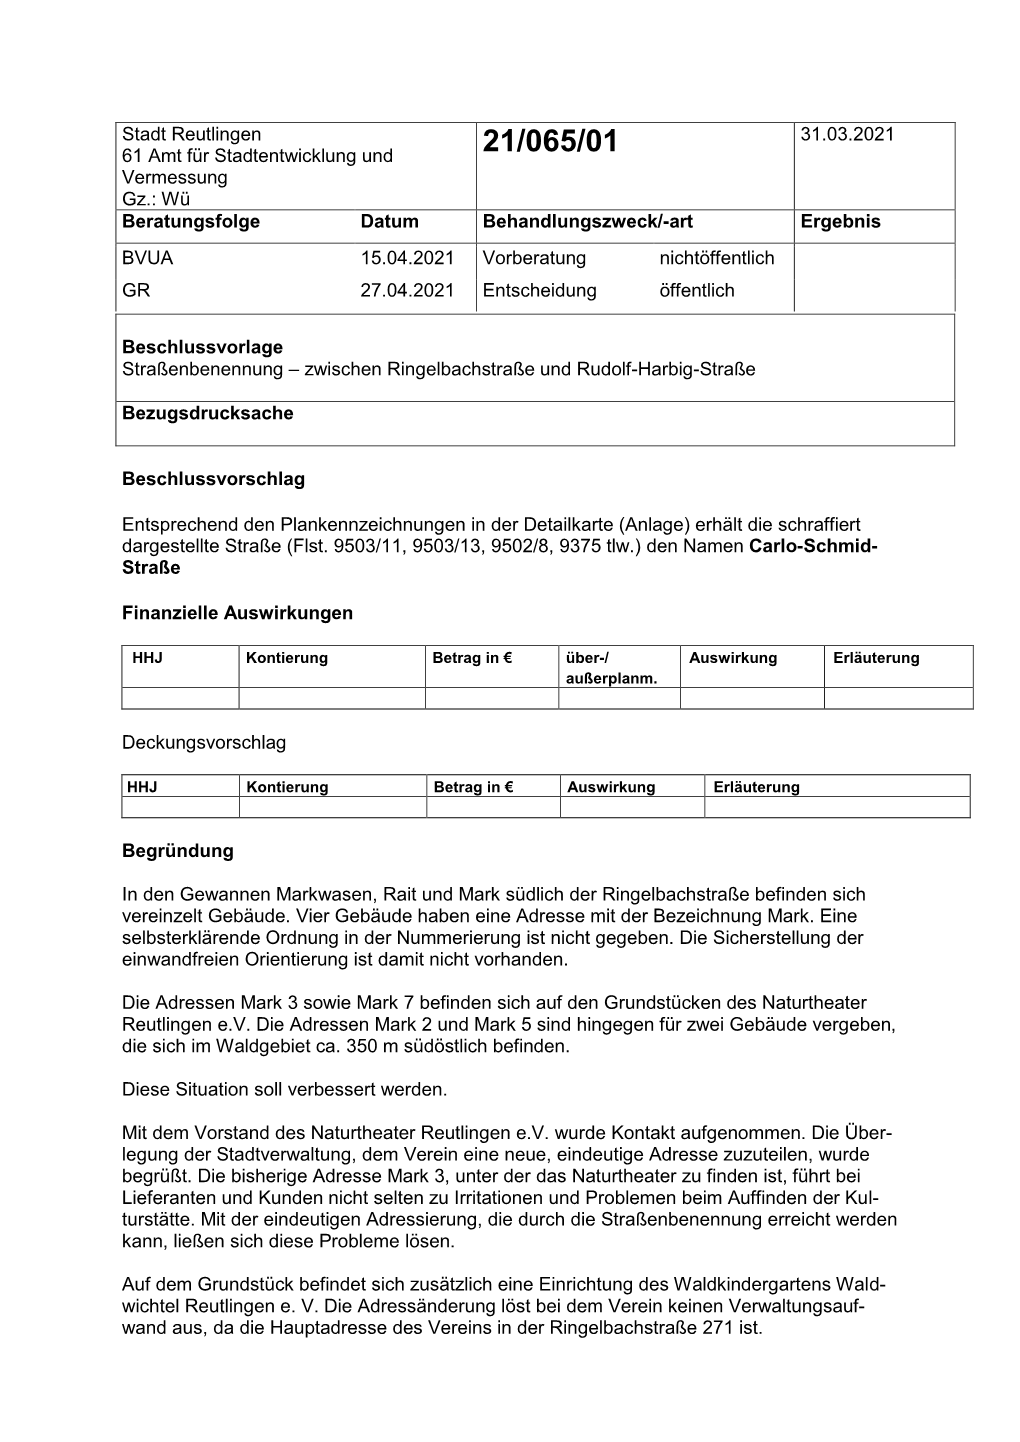 Stadt Reutlingen 61 Amt Für Stadtentwicklung Und Vermessung